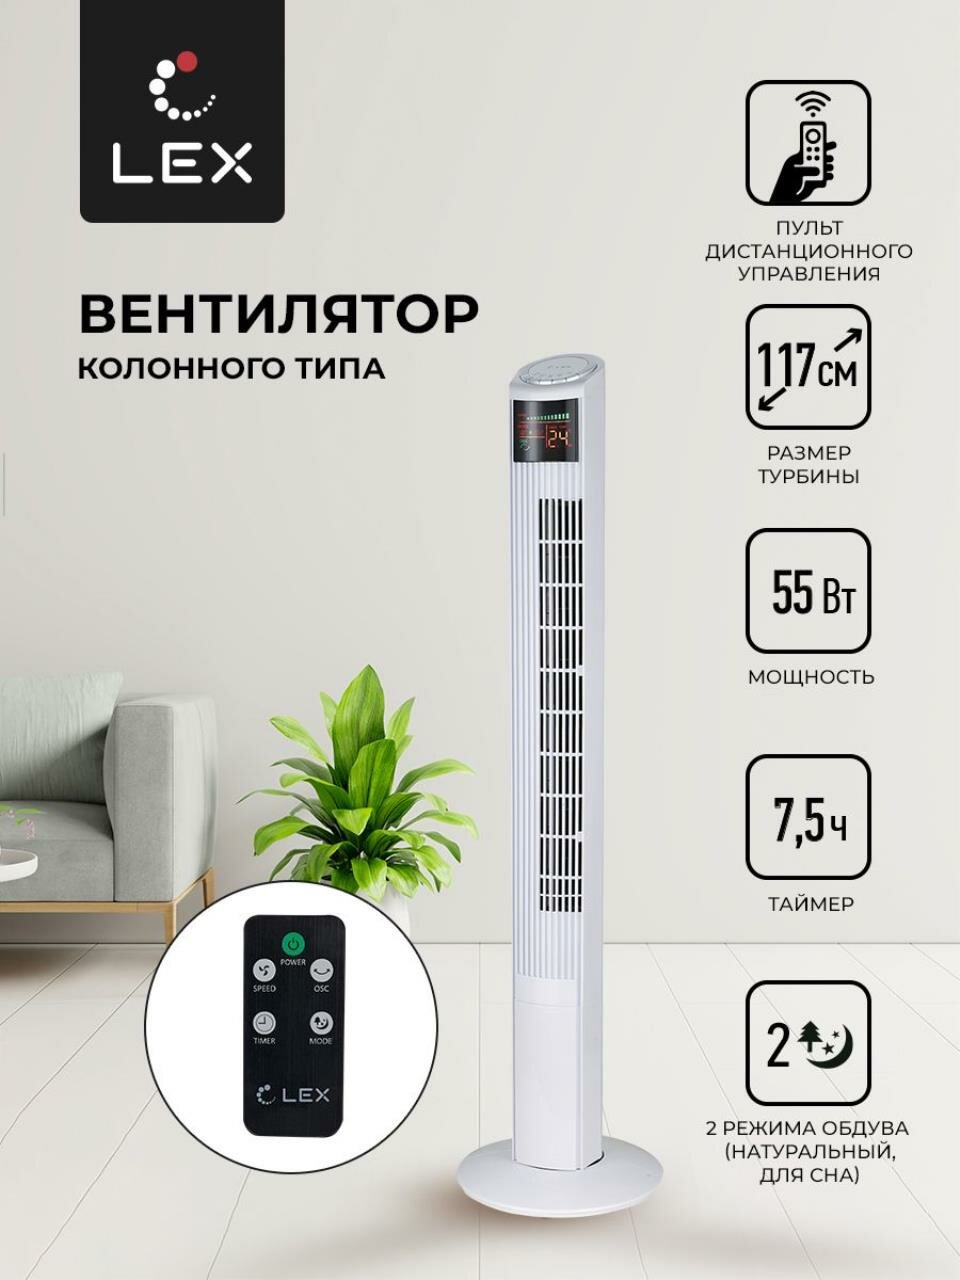 Вентилятор напольный LEX LXFC 8368 Мощность 55 Вт размер турбины 117см 3 скорости вращения таймер на 75 часов LED дисплей2 режима обдува тип управления электронный пульт Д/У.